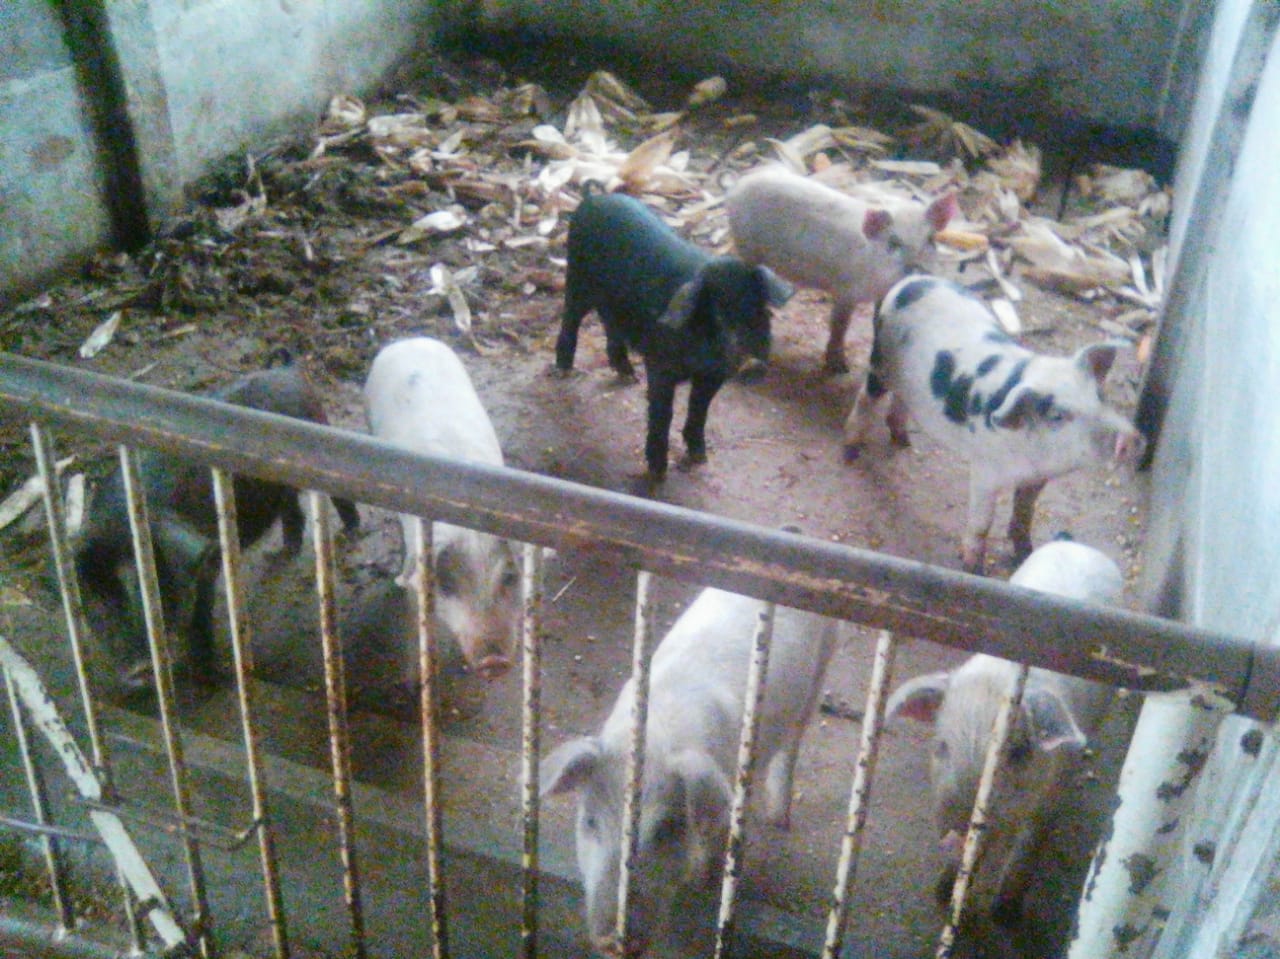 As familias também criam porcos e gados para consumo e venda. Foto: Jano Marques